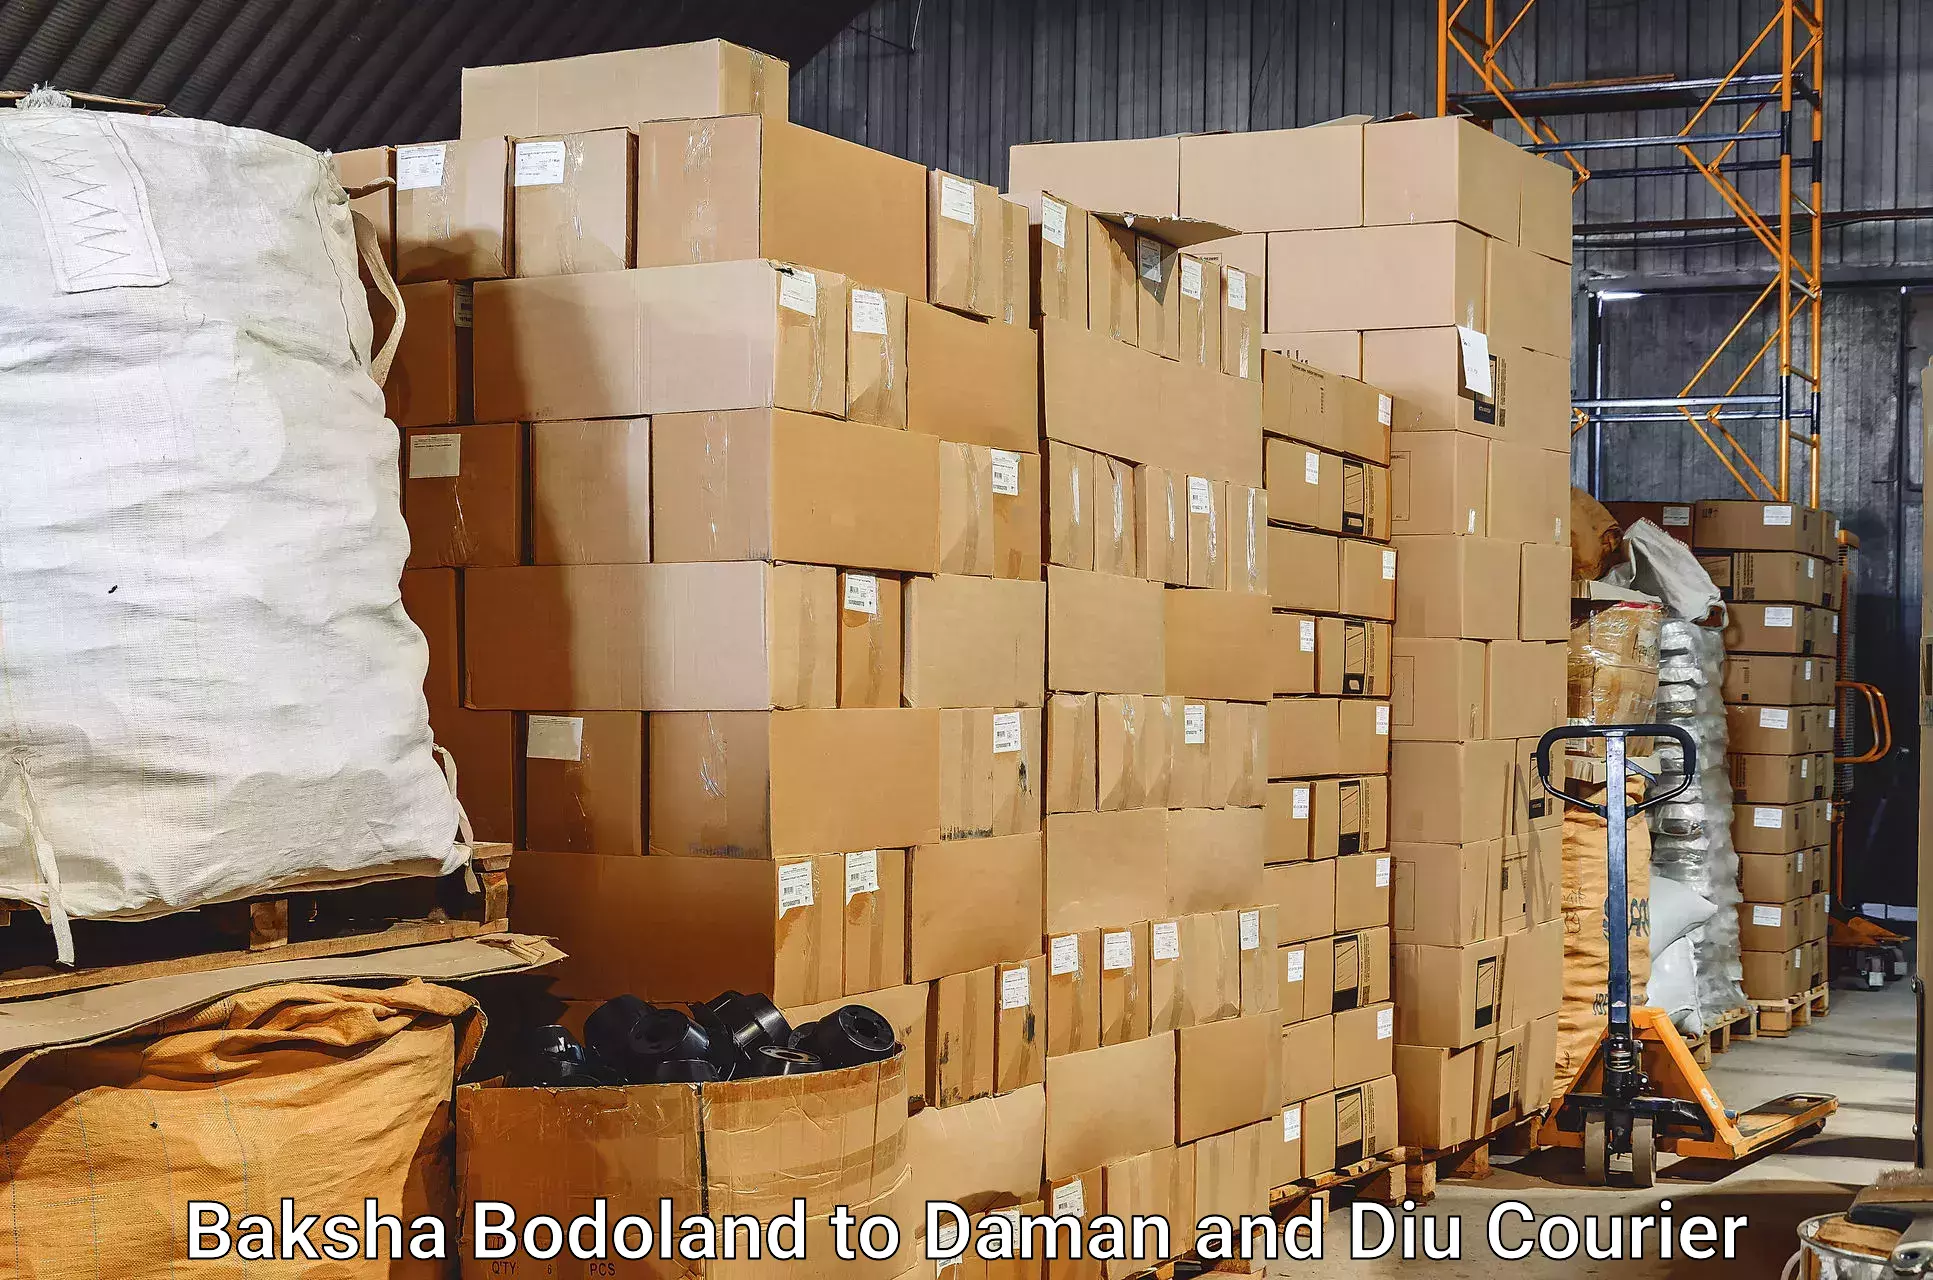 Luggage transport service Baksha Bodoland to Daman